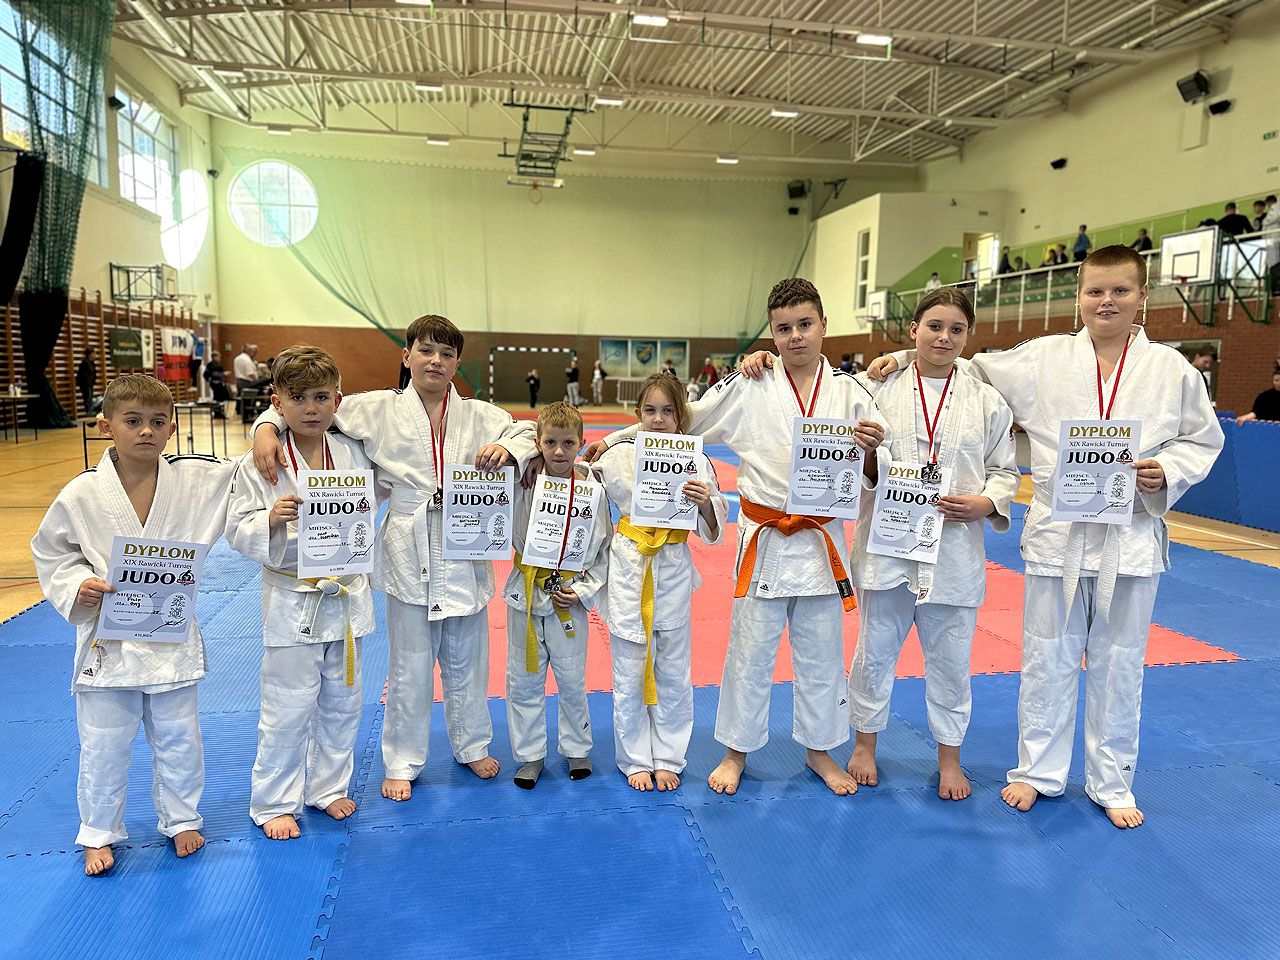 Za nimi weekend na medal! Judocy z Tuliszkowa na podium w dwóch turniejach